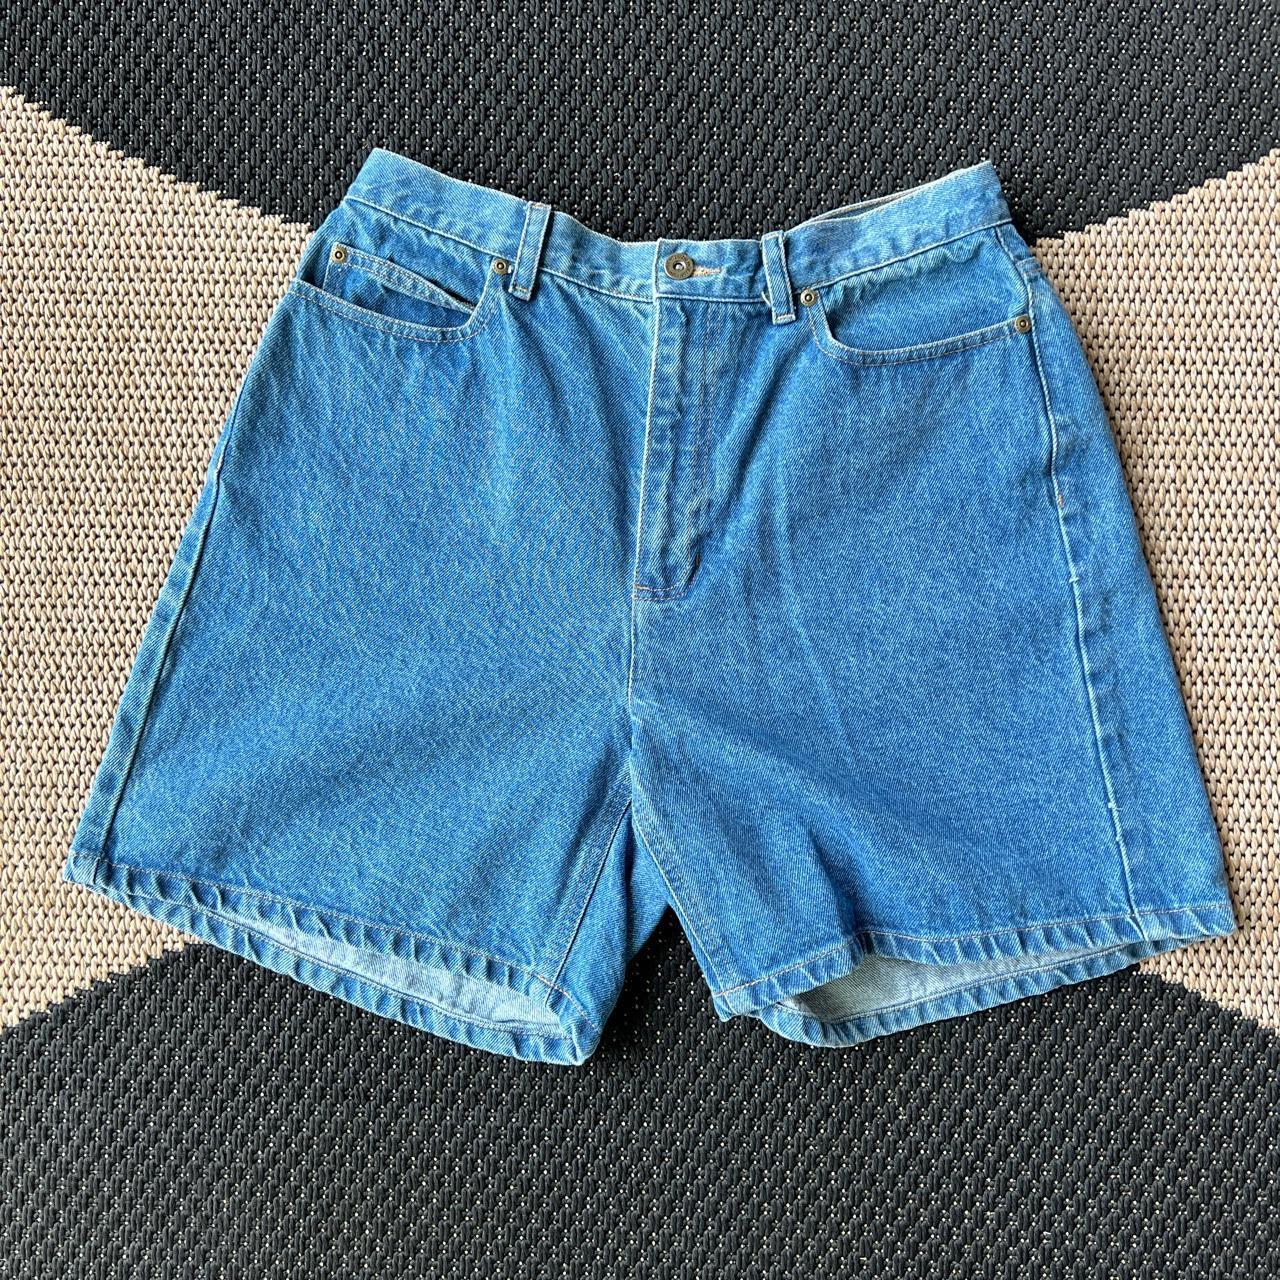 Vintage Liz Claiborne denim shorts. Size 12 Waist:... - Depop